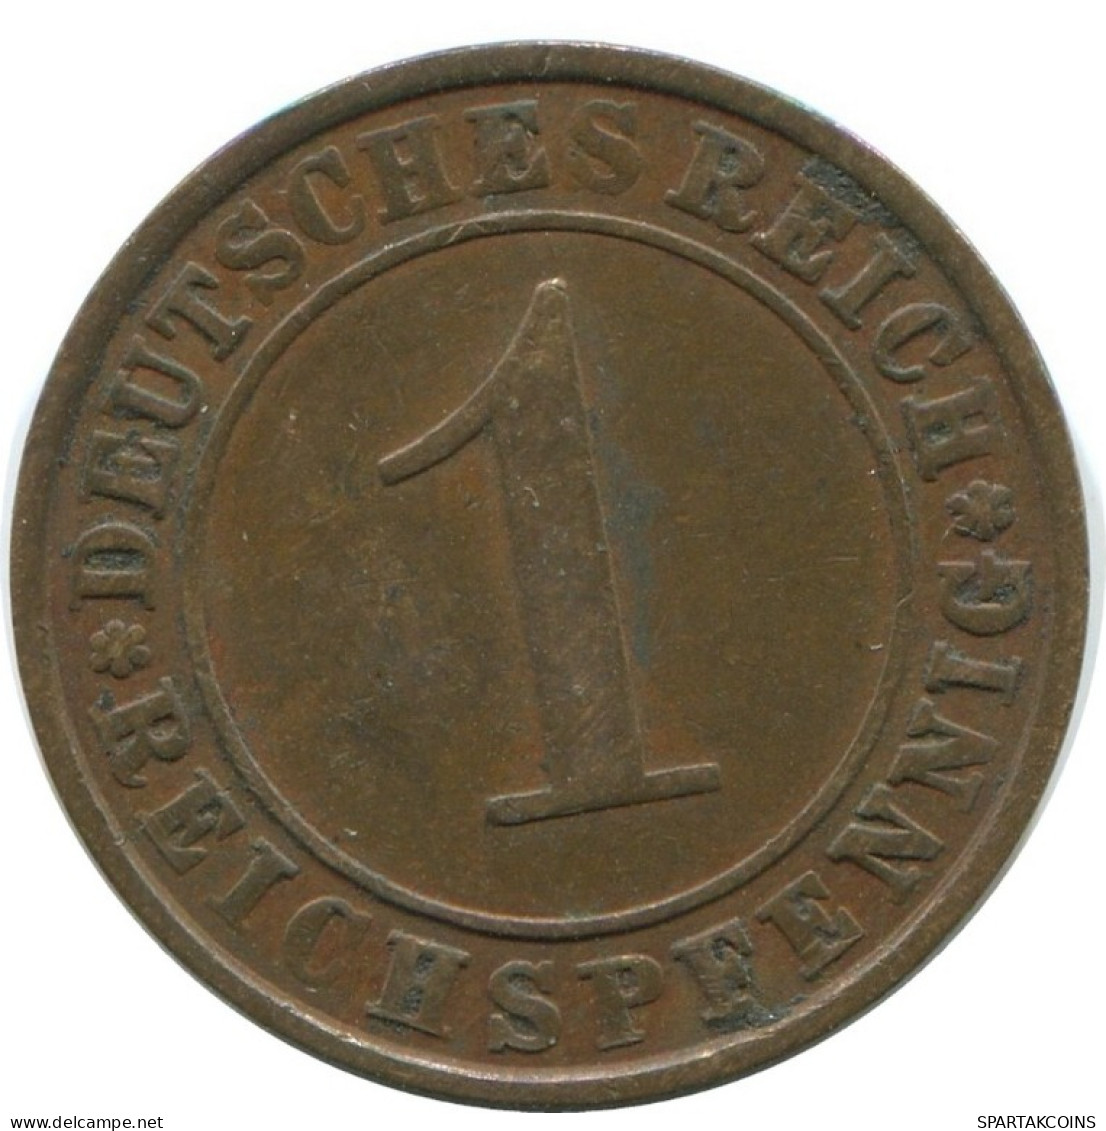 1 REICHSPFENNIG 1930 A DEUTSCHLAND Münze GERMANY #AD458.9.D.A - 1 Renten- & 1 Reichspfennig